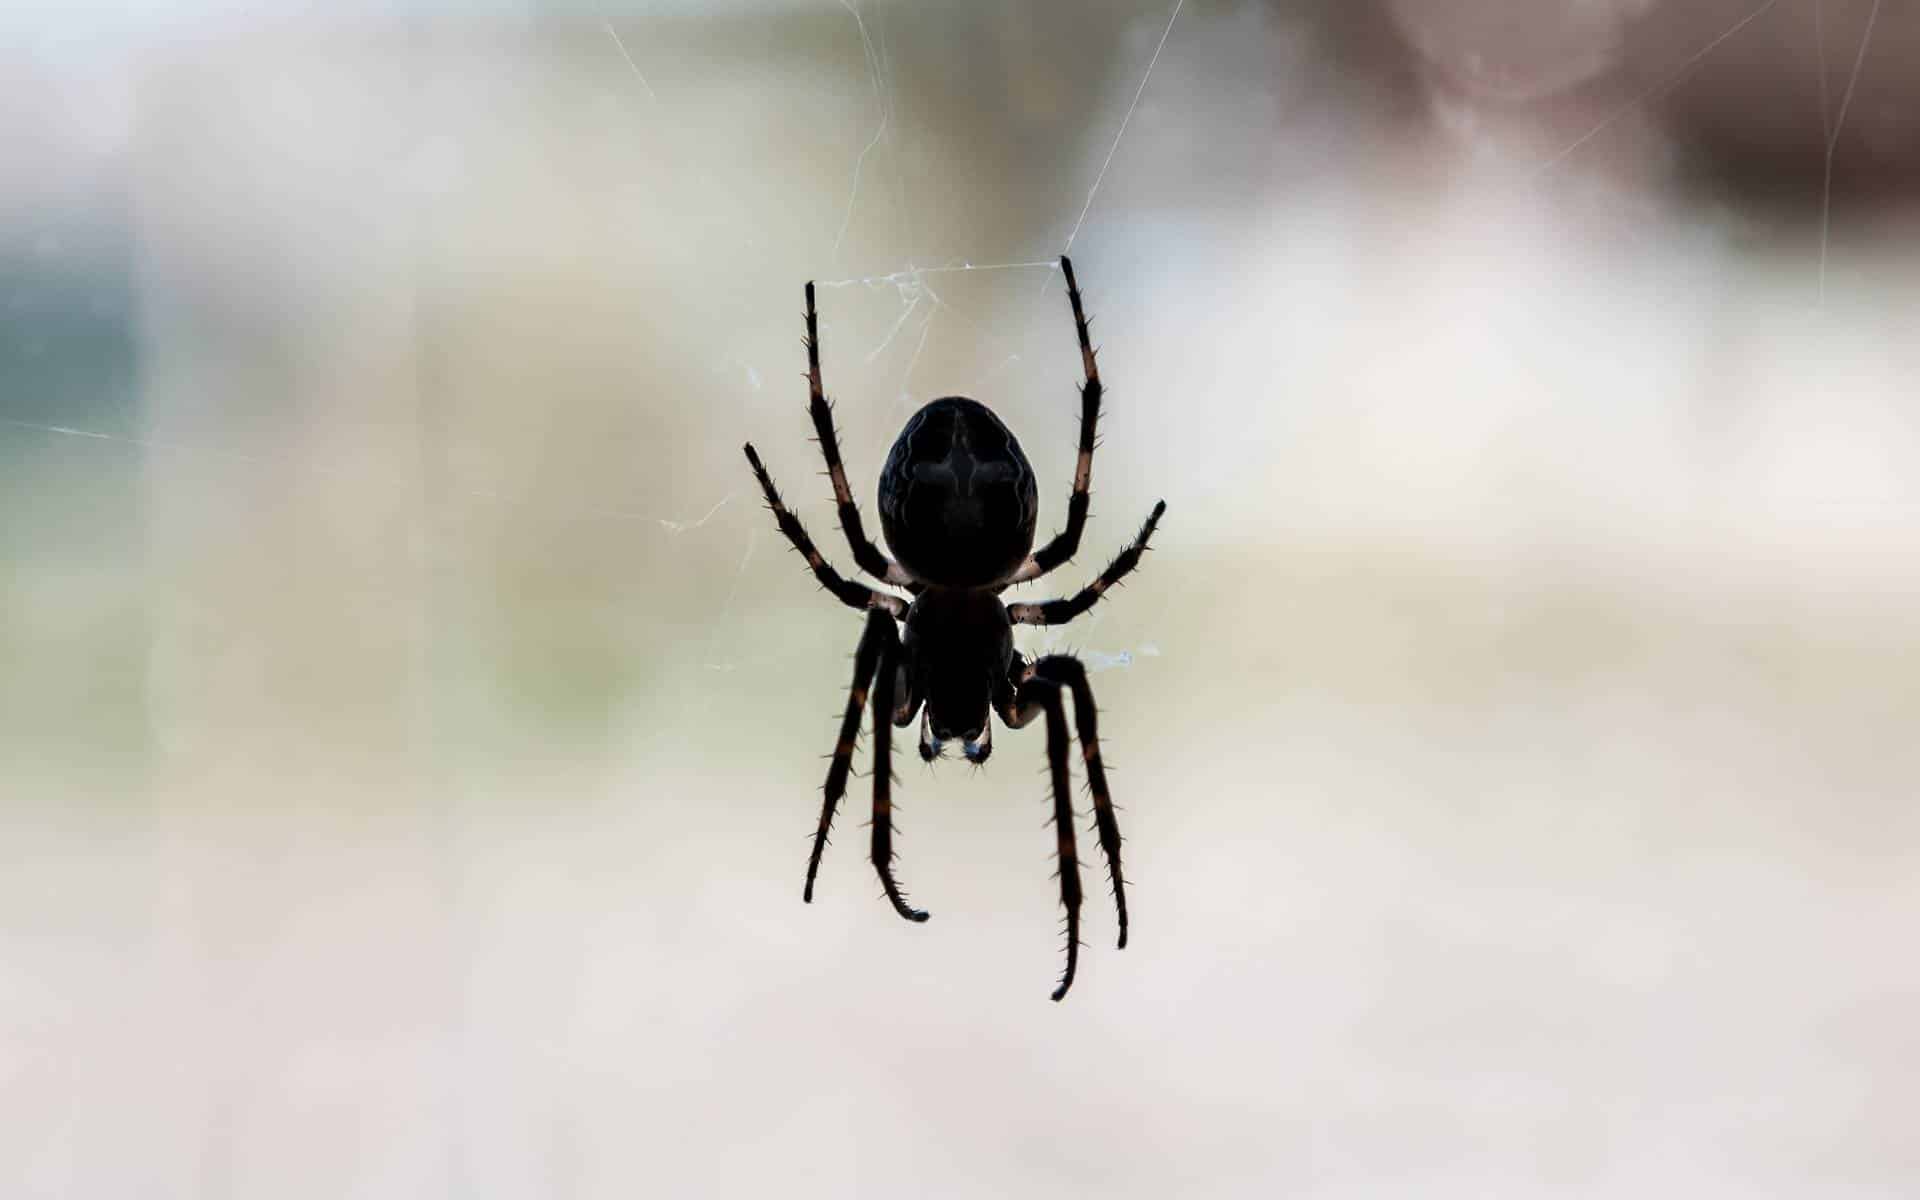 Uma aranha preta num vidro de uma janela.